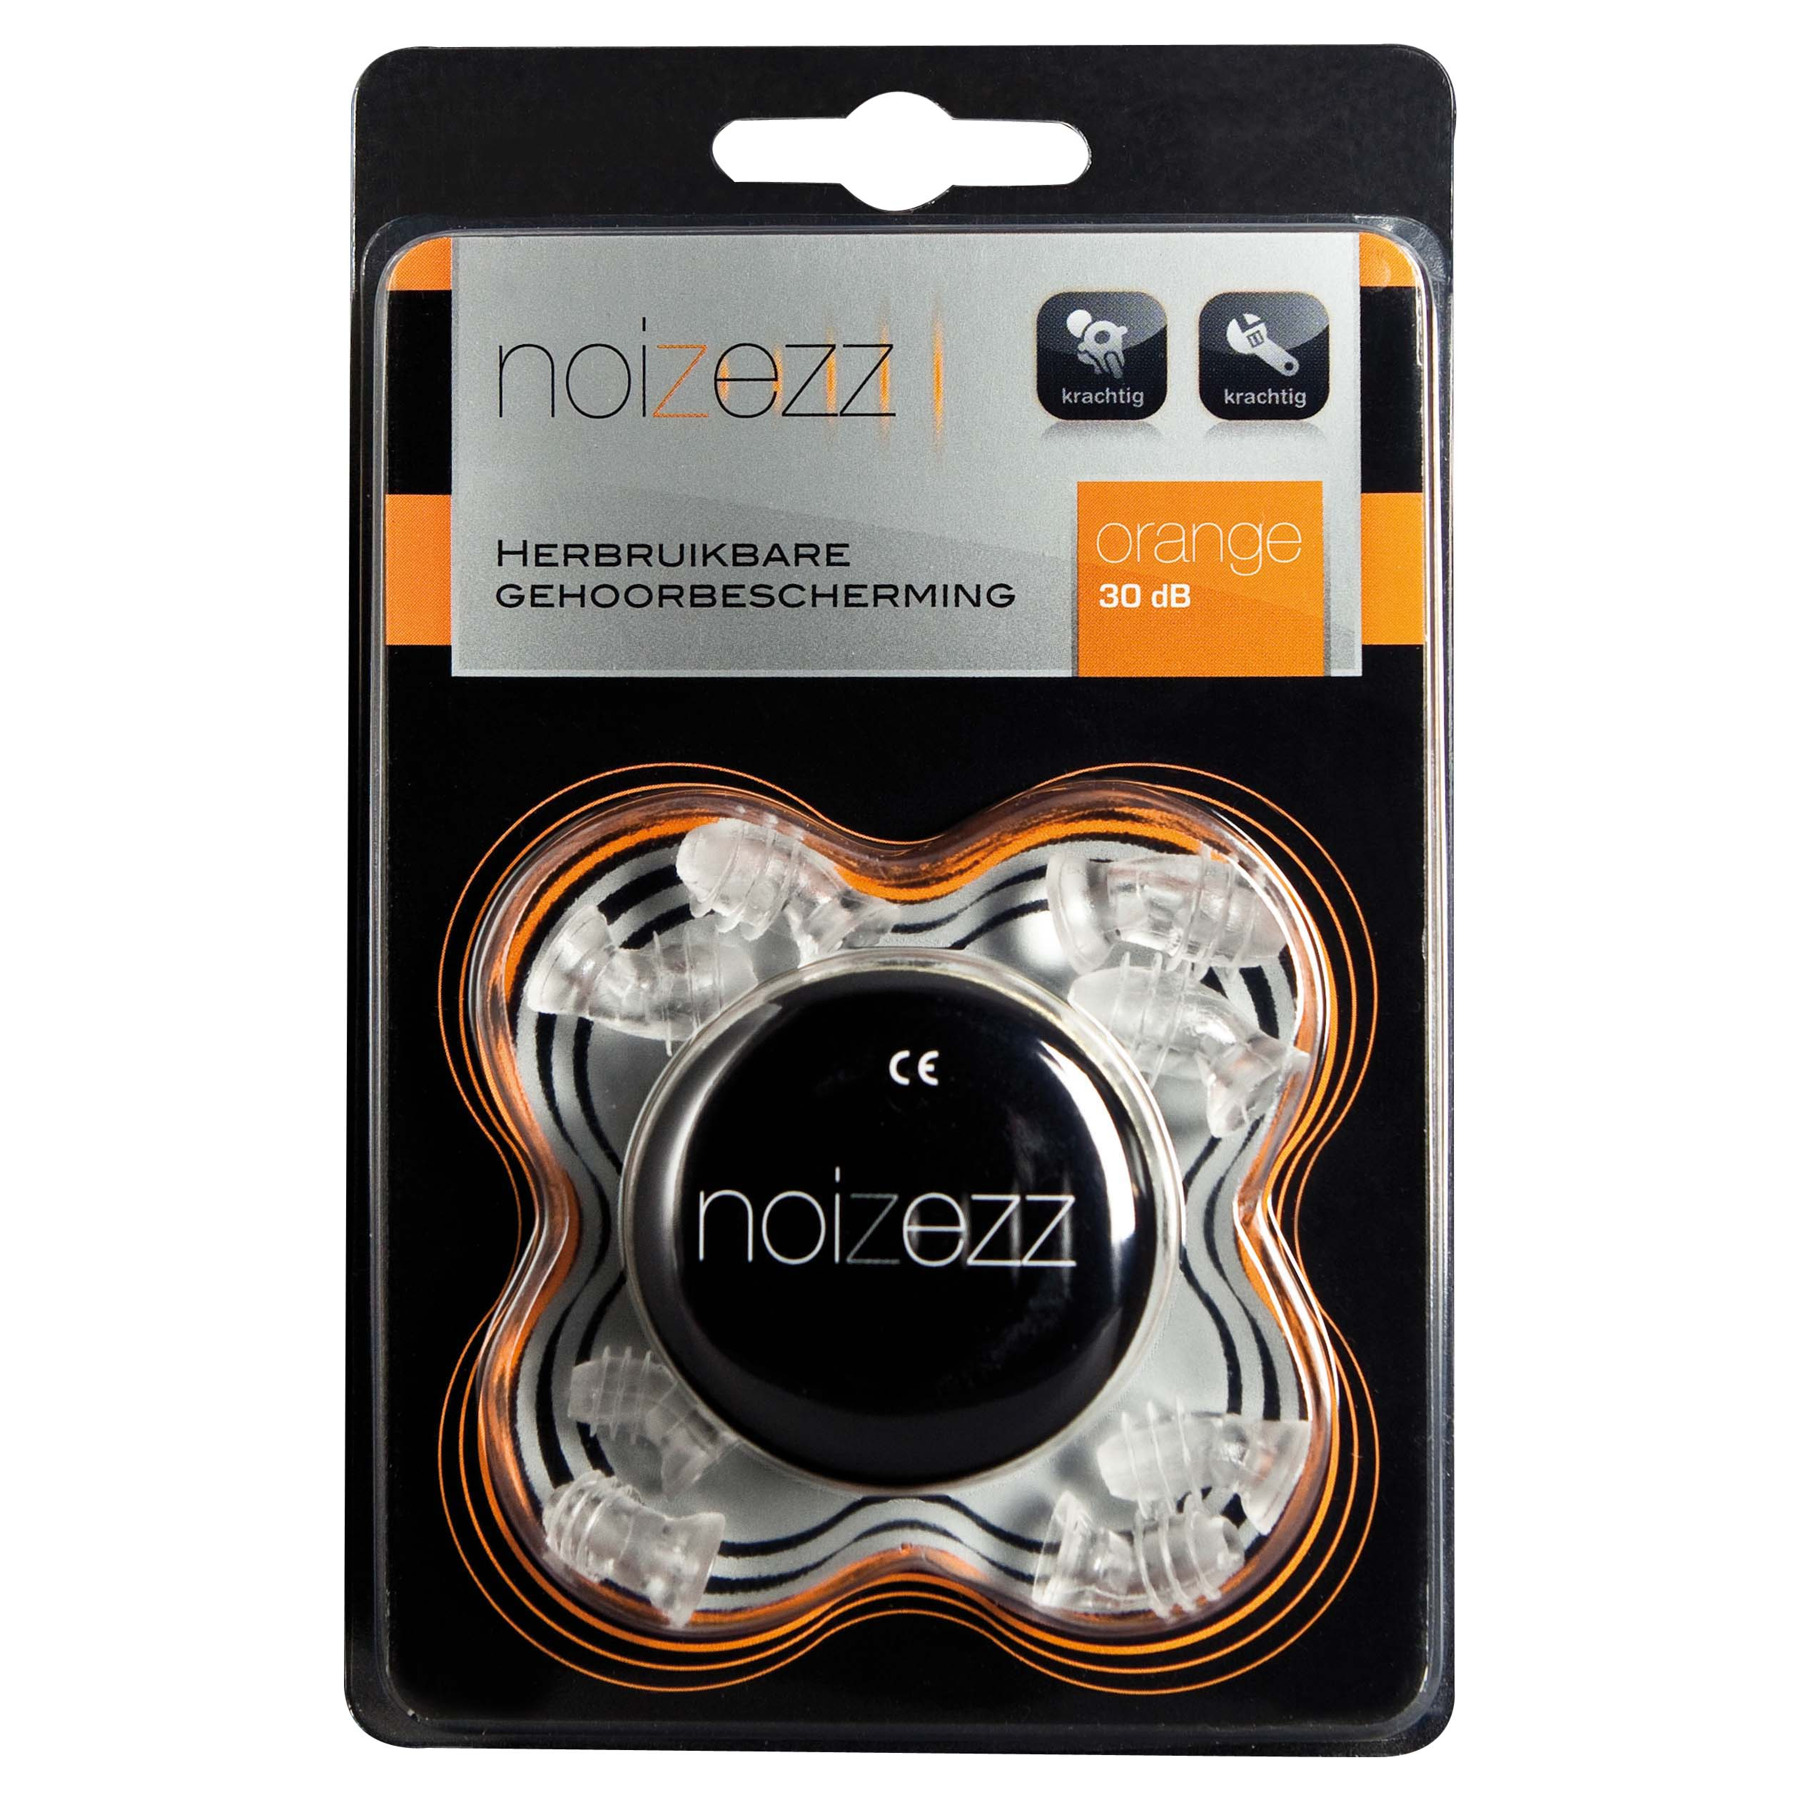 Noizezz Orange gehoorbescherming - bestel voor laagste prijs, reviews en Alle Gehoorbescherming direct online bestellen via motorkledingoutlet.nl